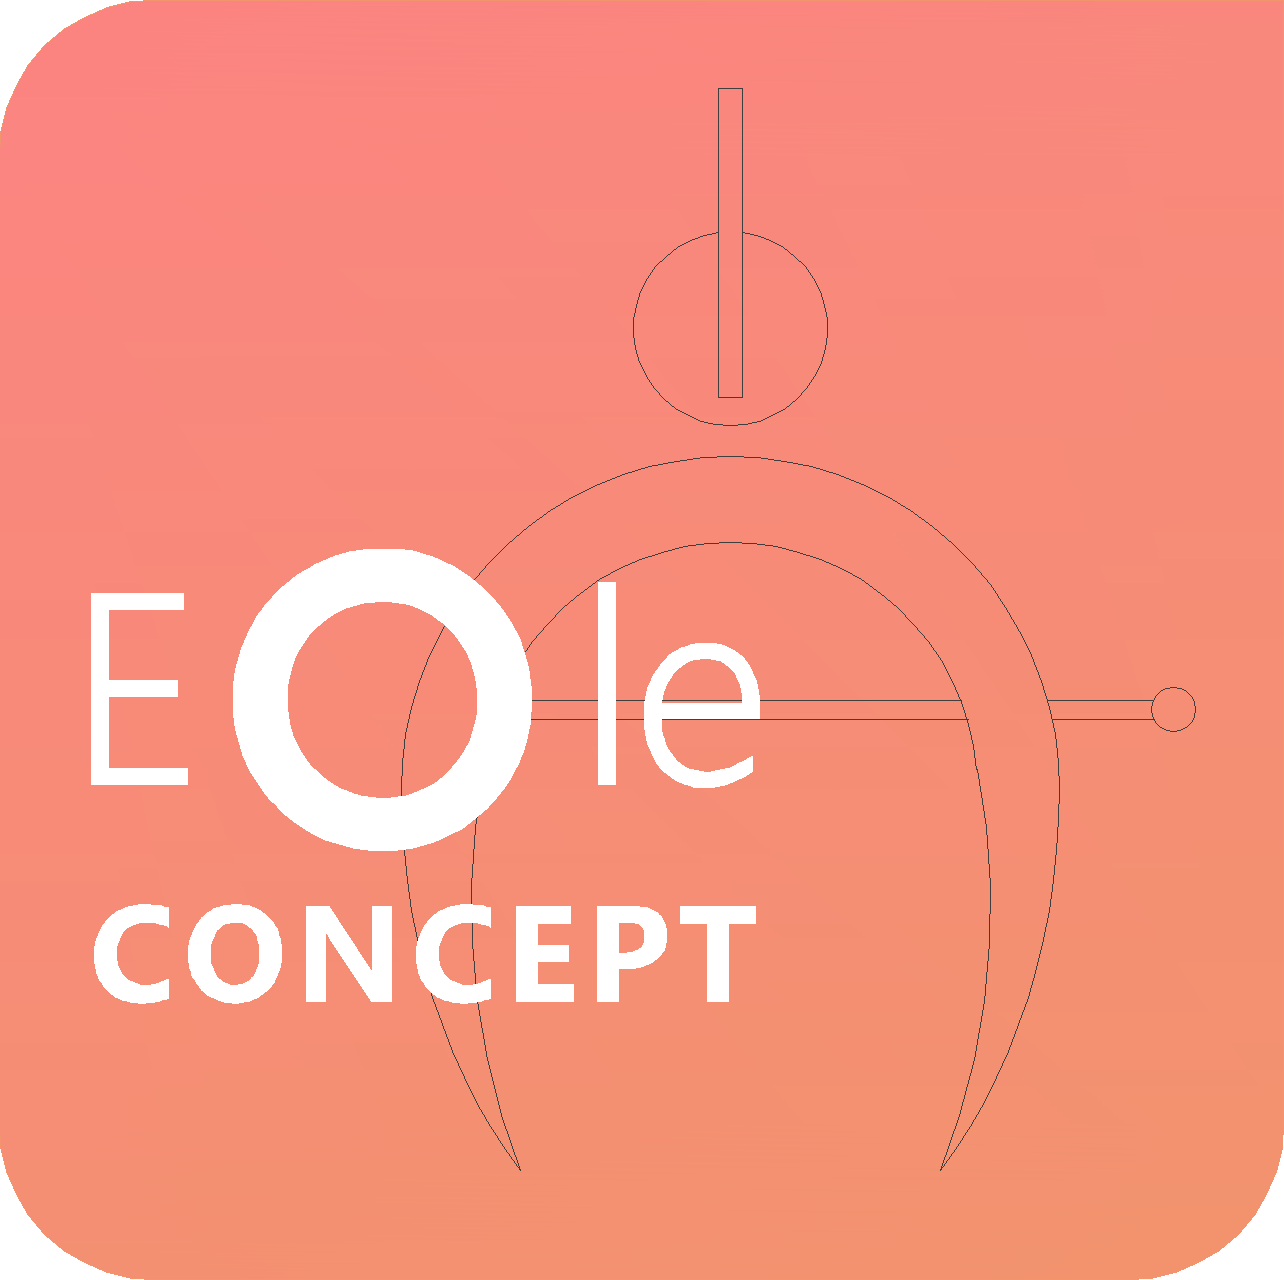 Eole Concept - Logo